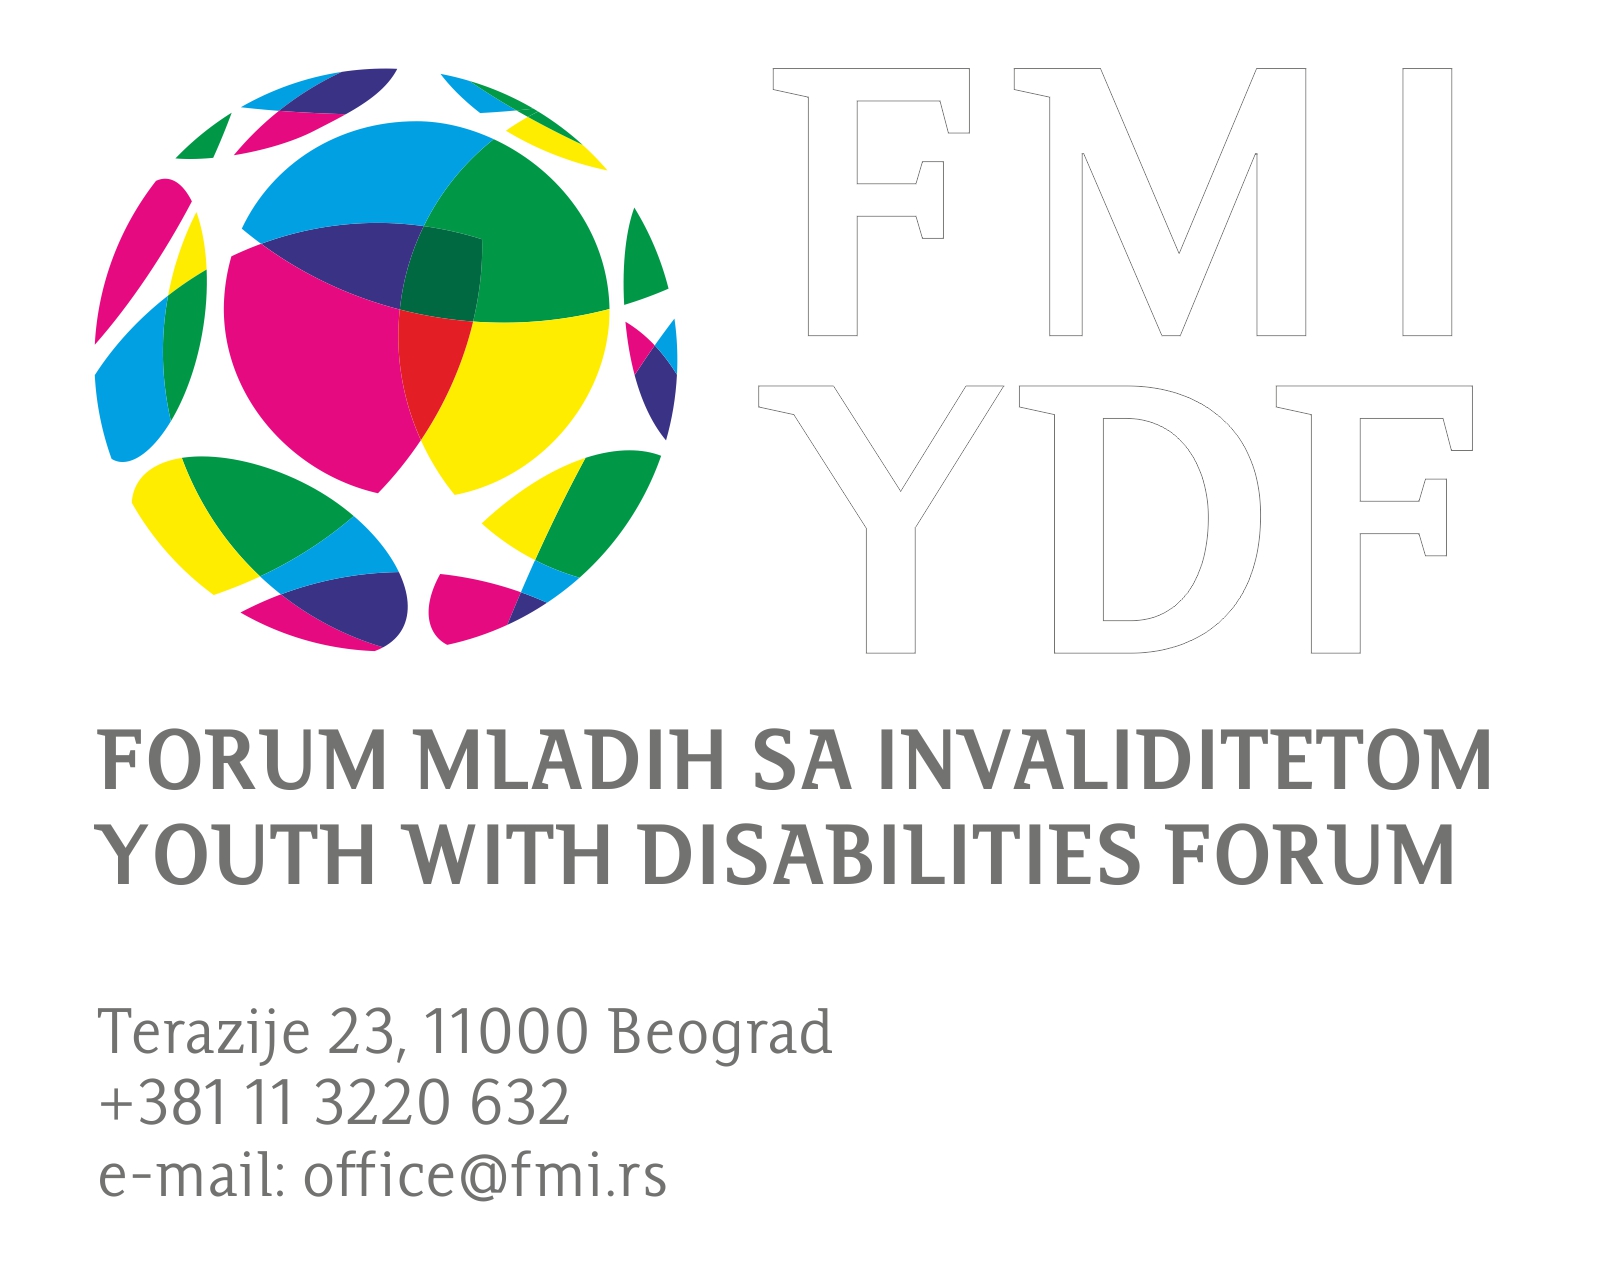 Forum mladih sa invaliditetom: Realizovan treći ciklus radnih praksi